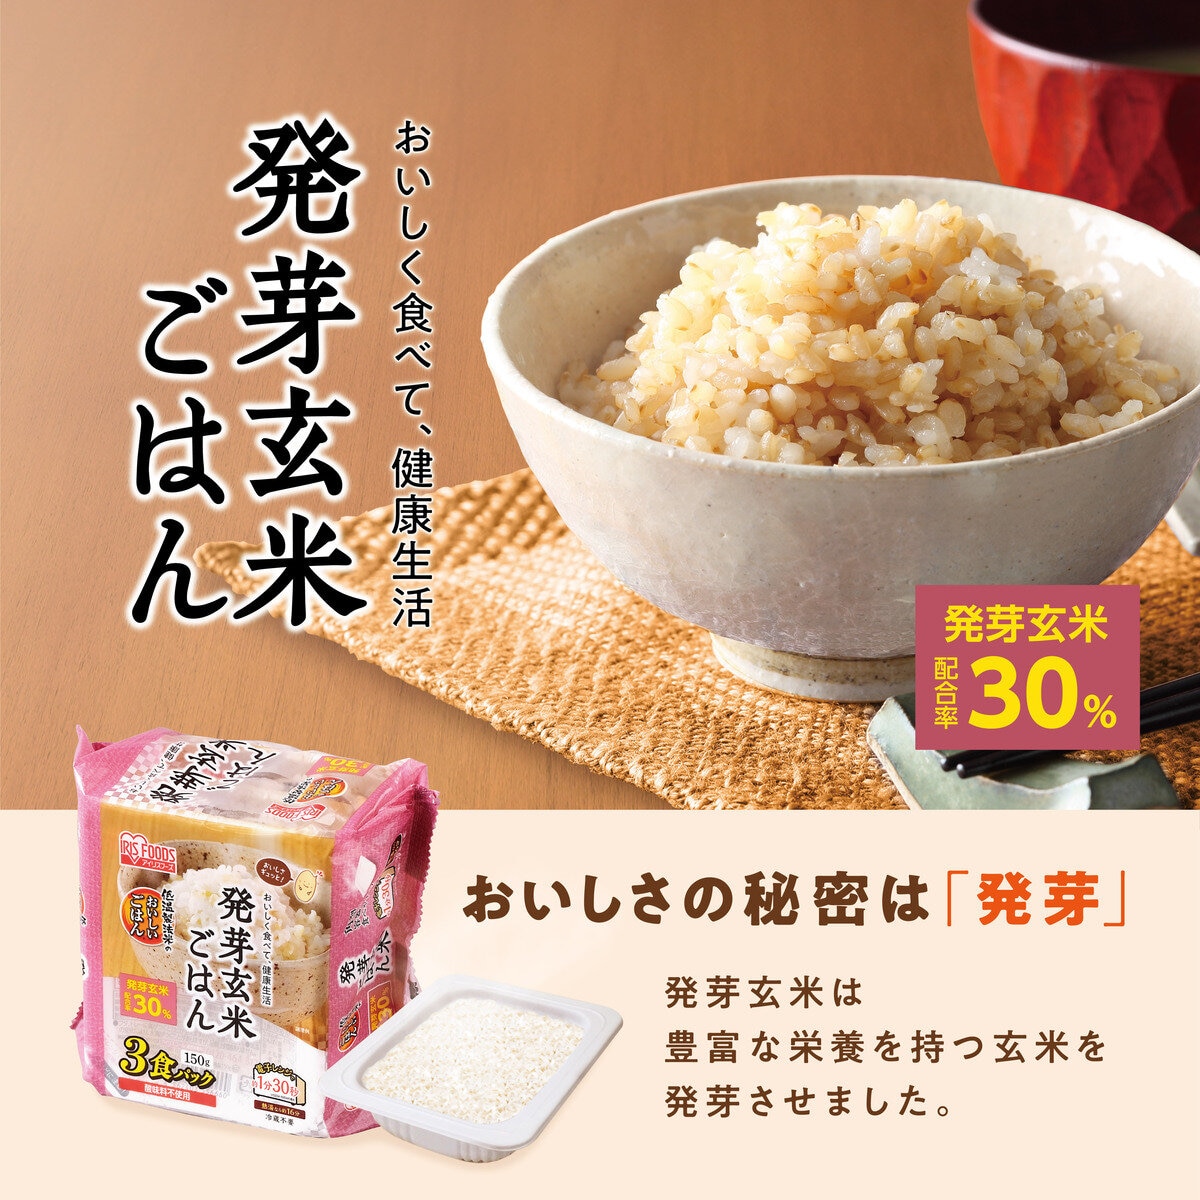 150g　x　24食　Costco　Japan　アイリス　発芽玄米パックご飯